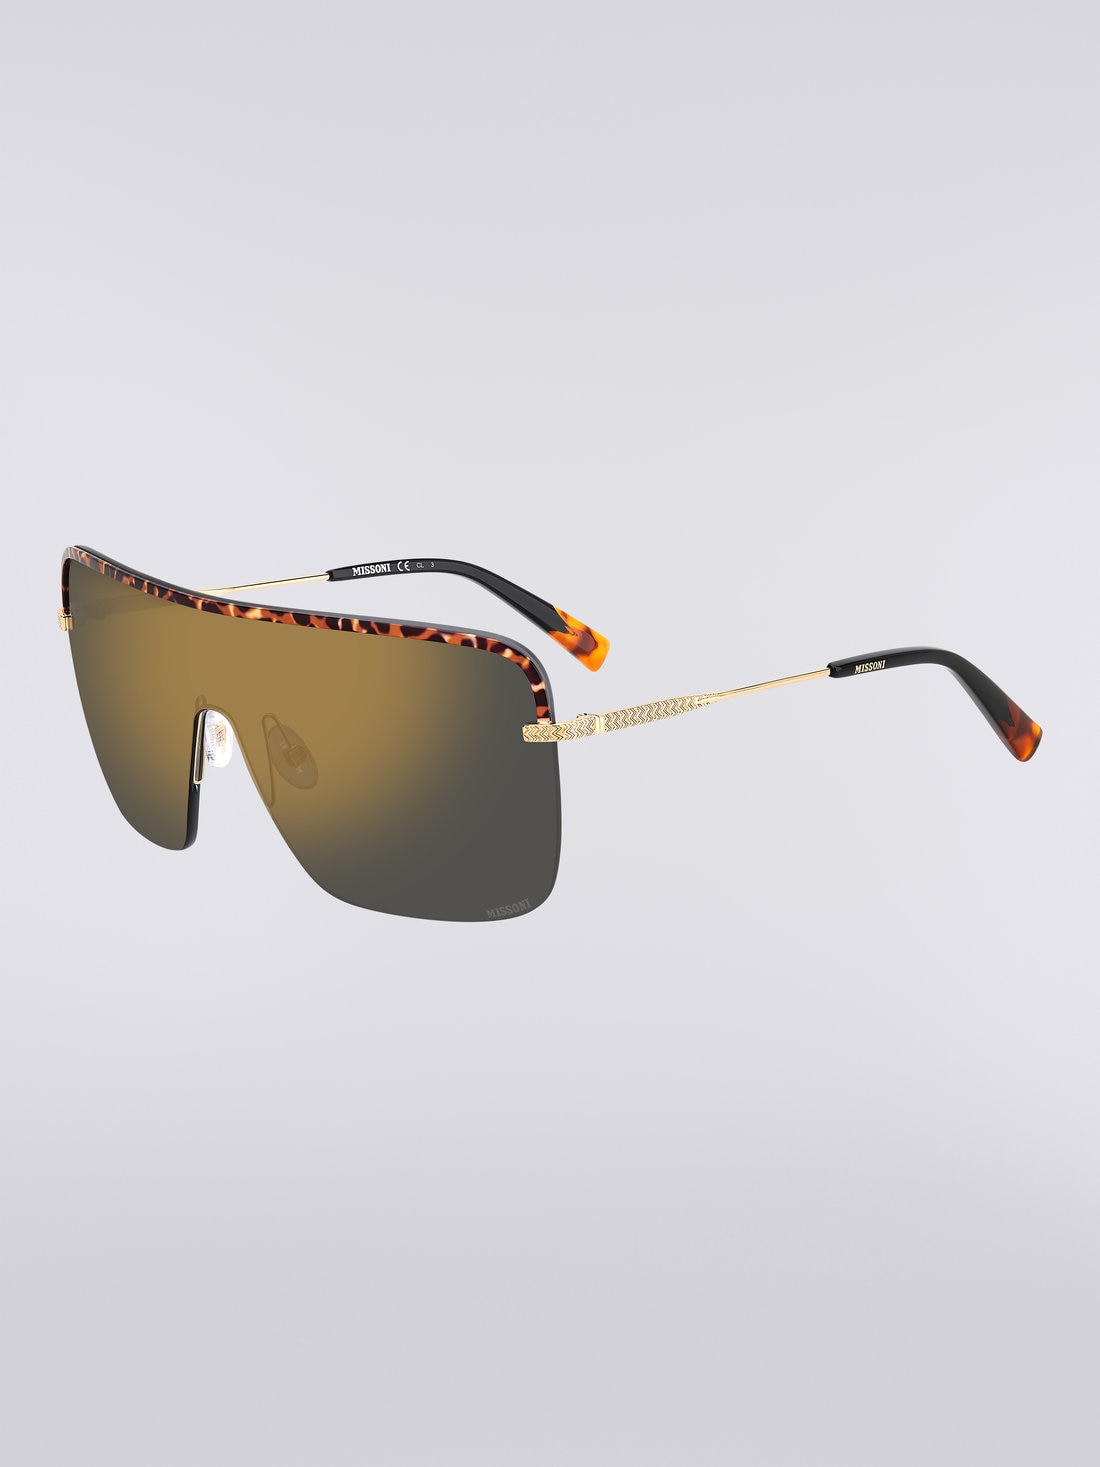 Missoni Seasonal Metal Sunglasses, Multicoloured  - 8051575840210 - 1